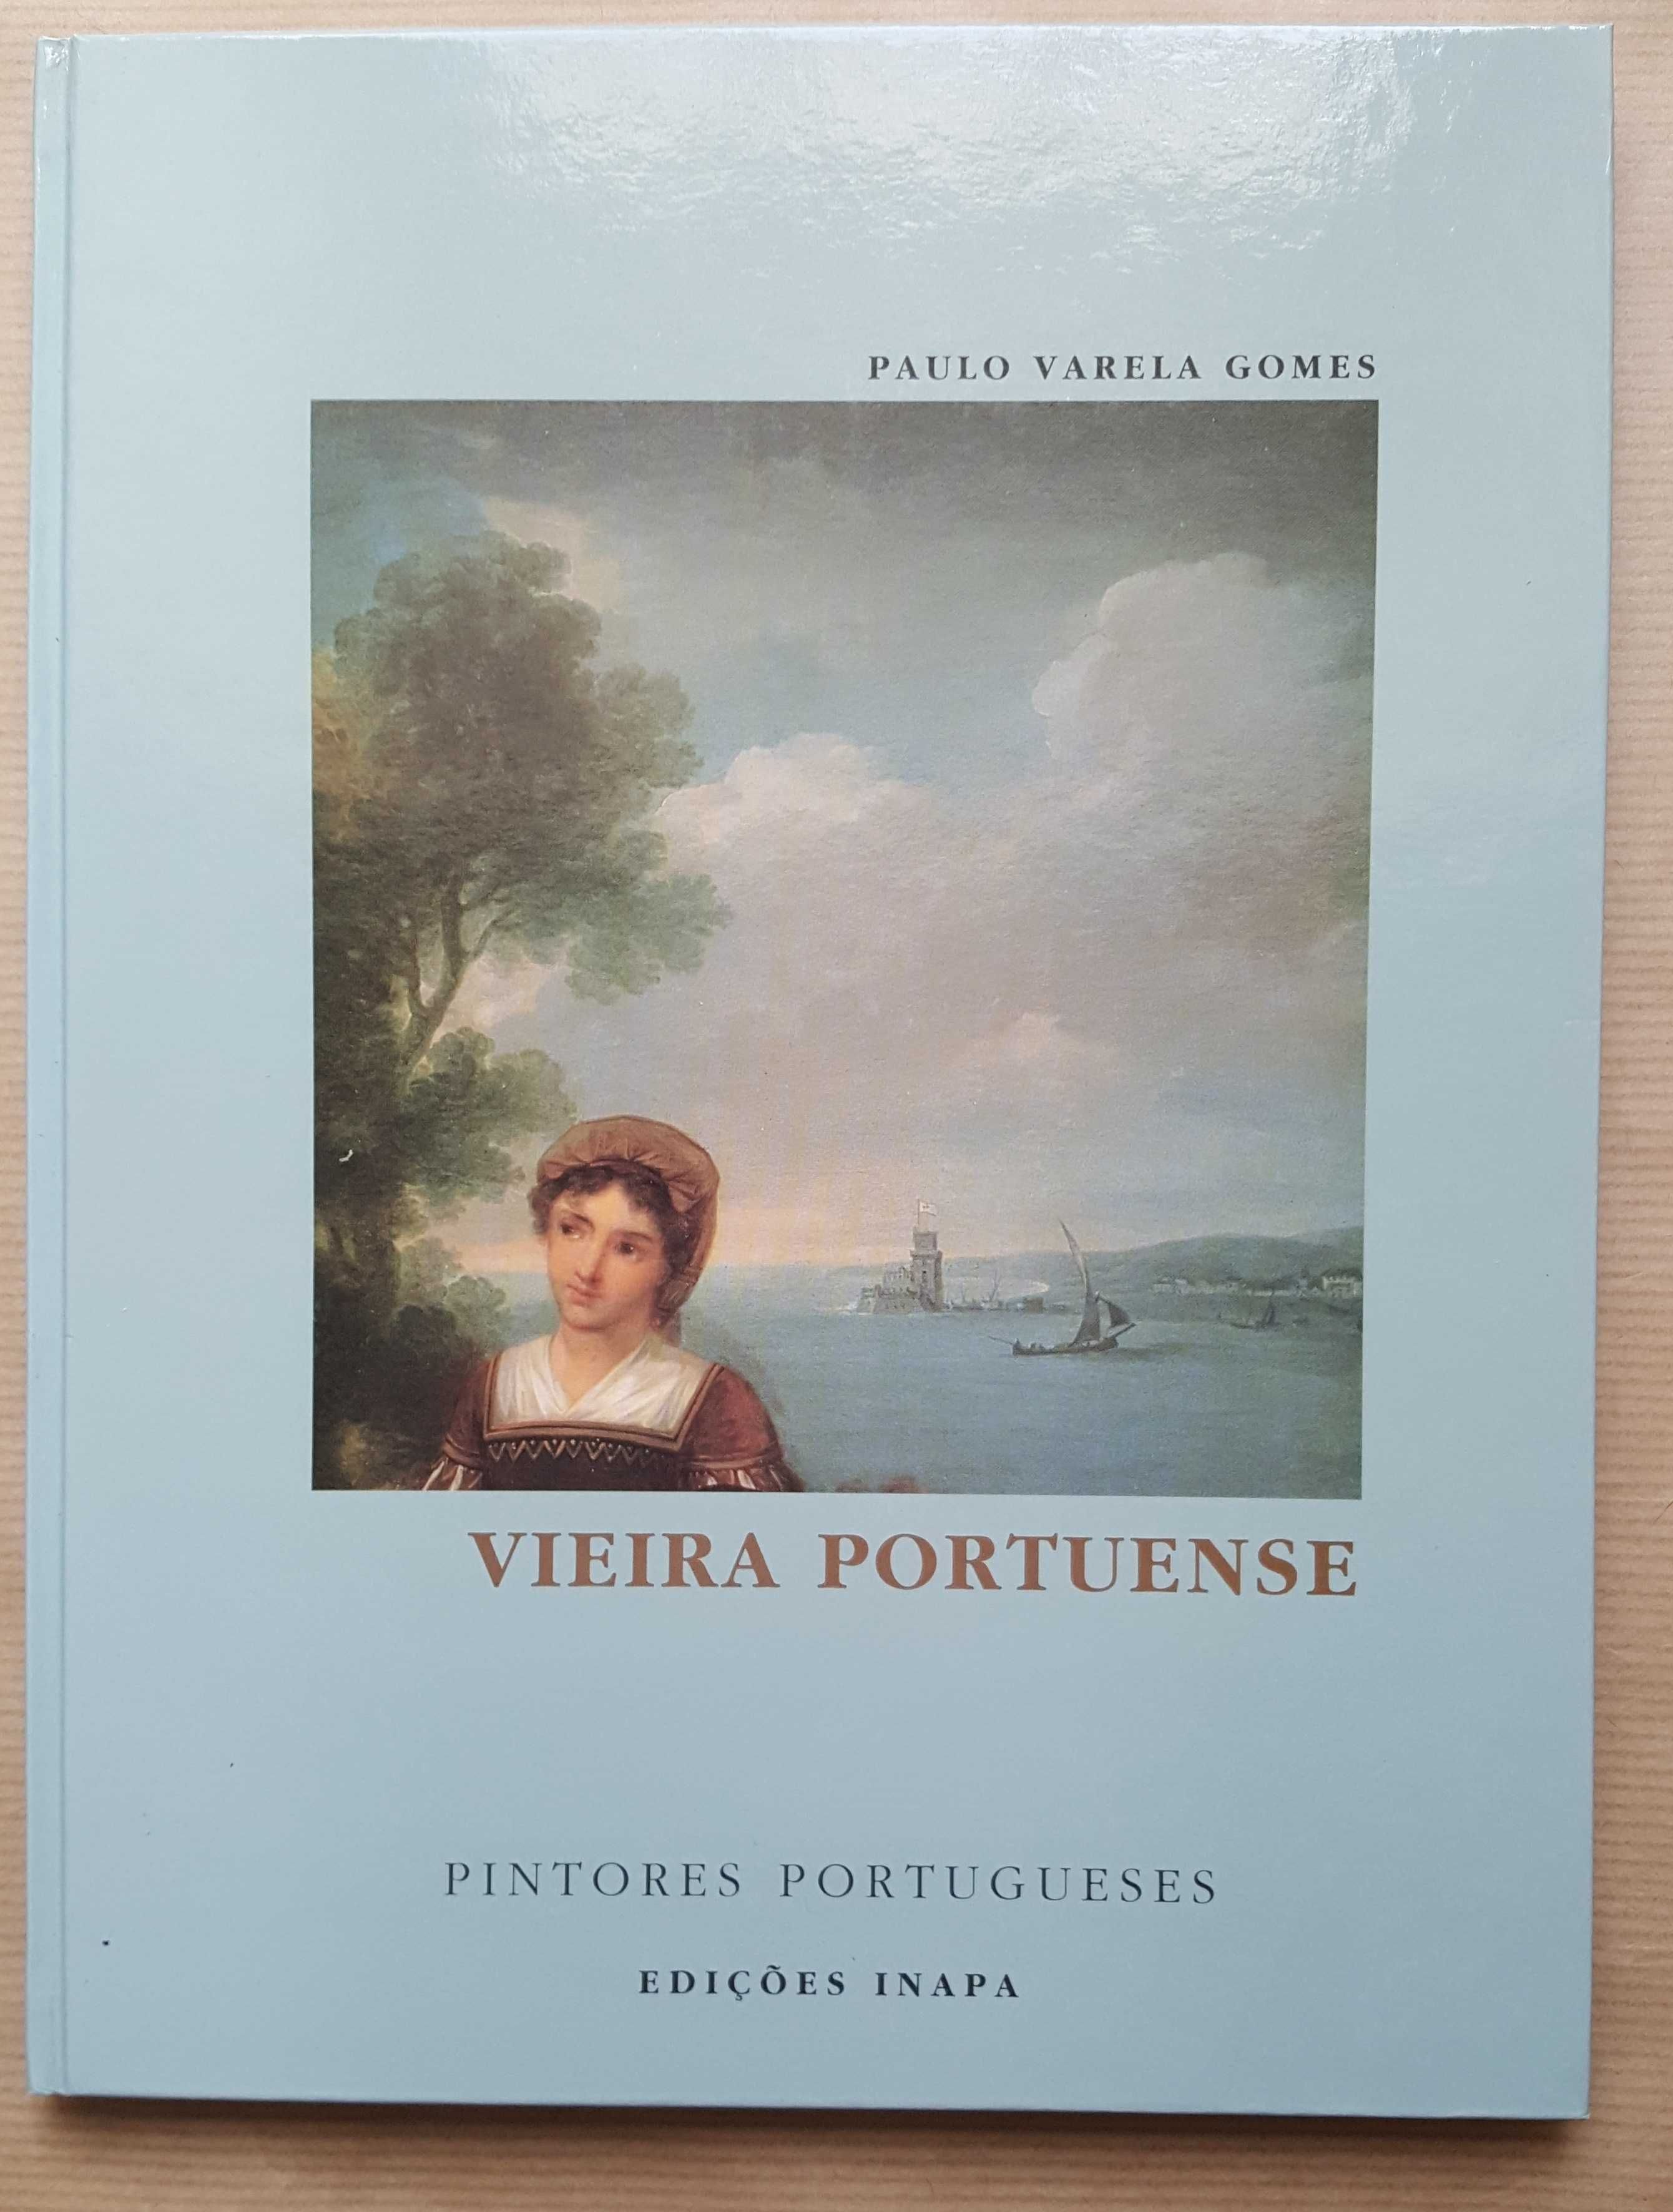 Livro "Pintores Portugueses", Vieira Portuense * ENVIO GRÁTIS *